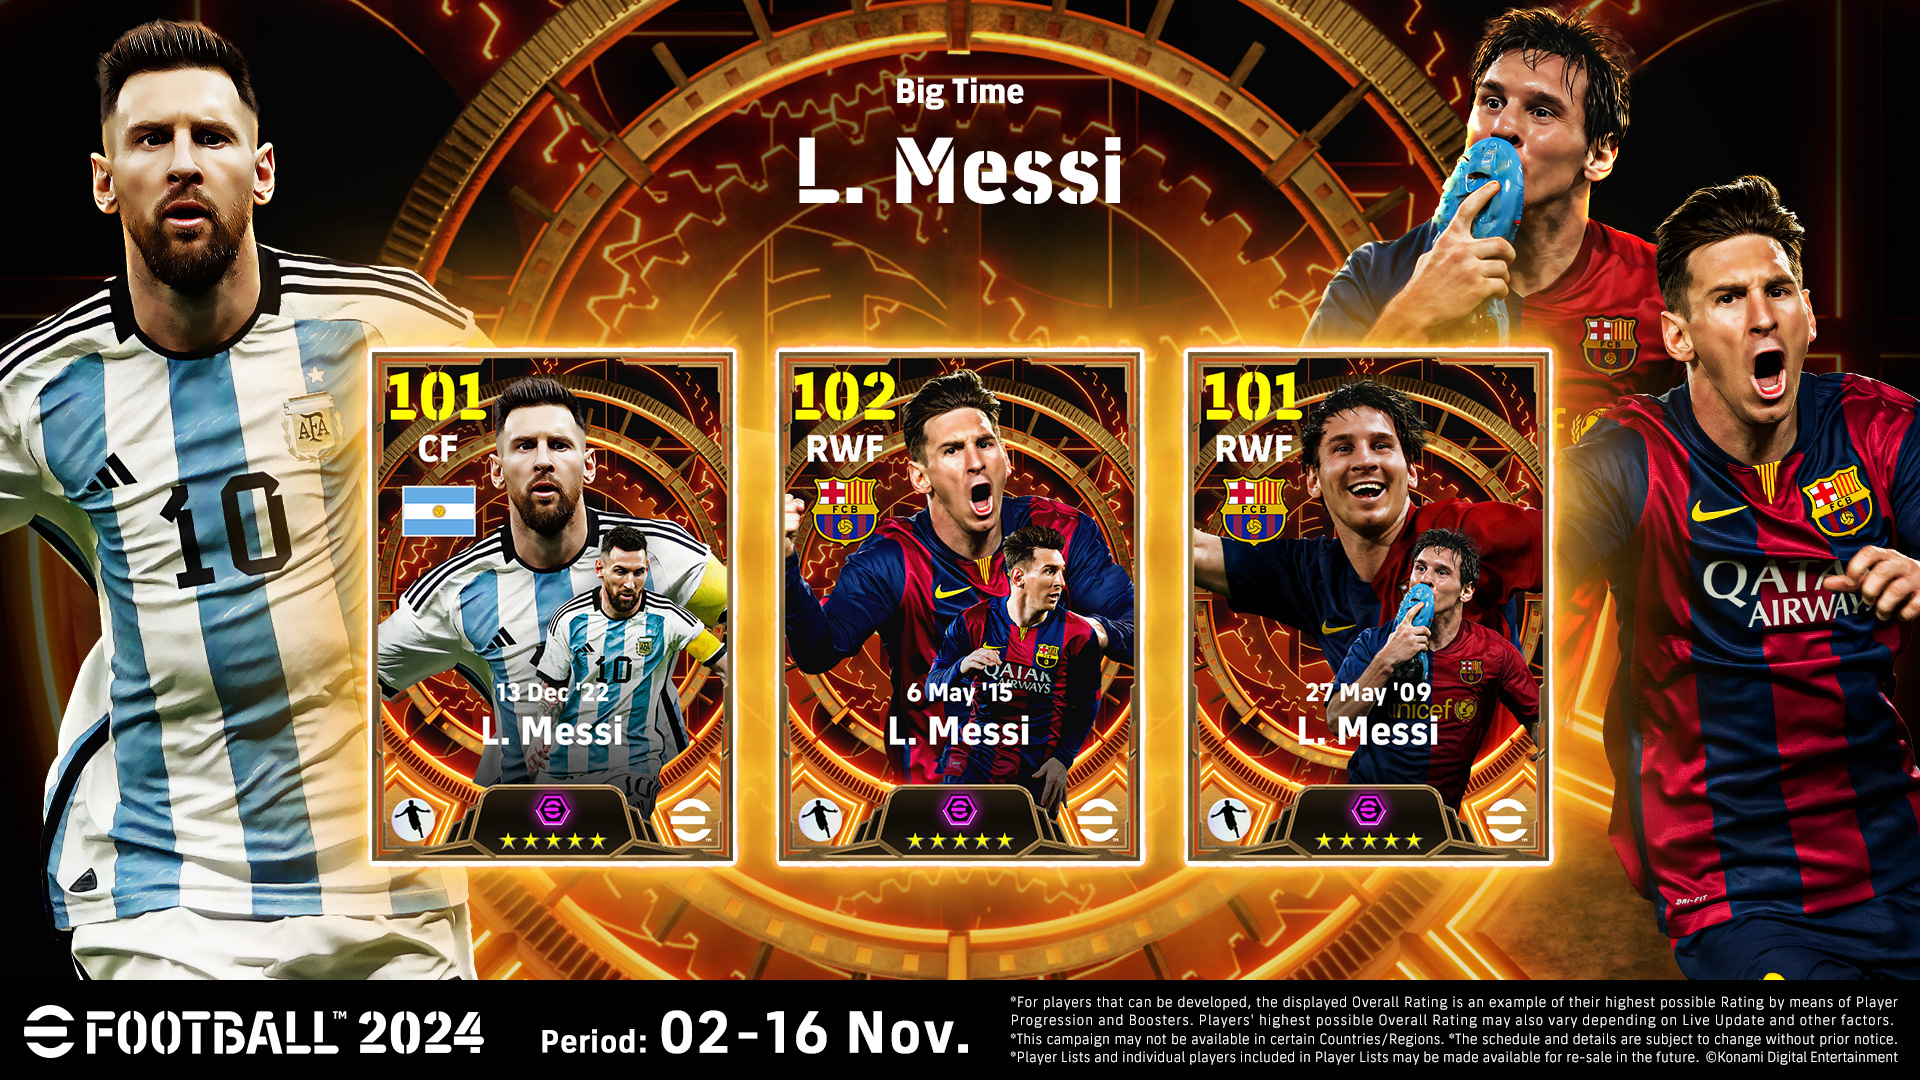 Efootball™”, Resmi Oyun Elçisi Lionel Messi'nin Bir Kez Daha Dünya Futbolunun En İyisi Seçilmesini Kutluyor!